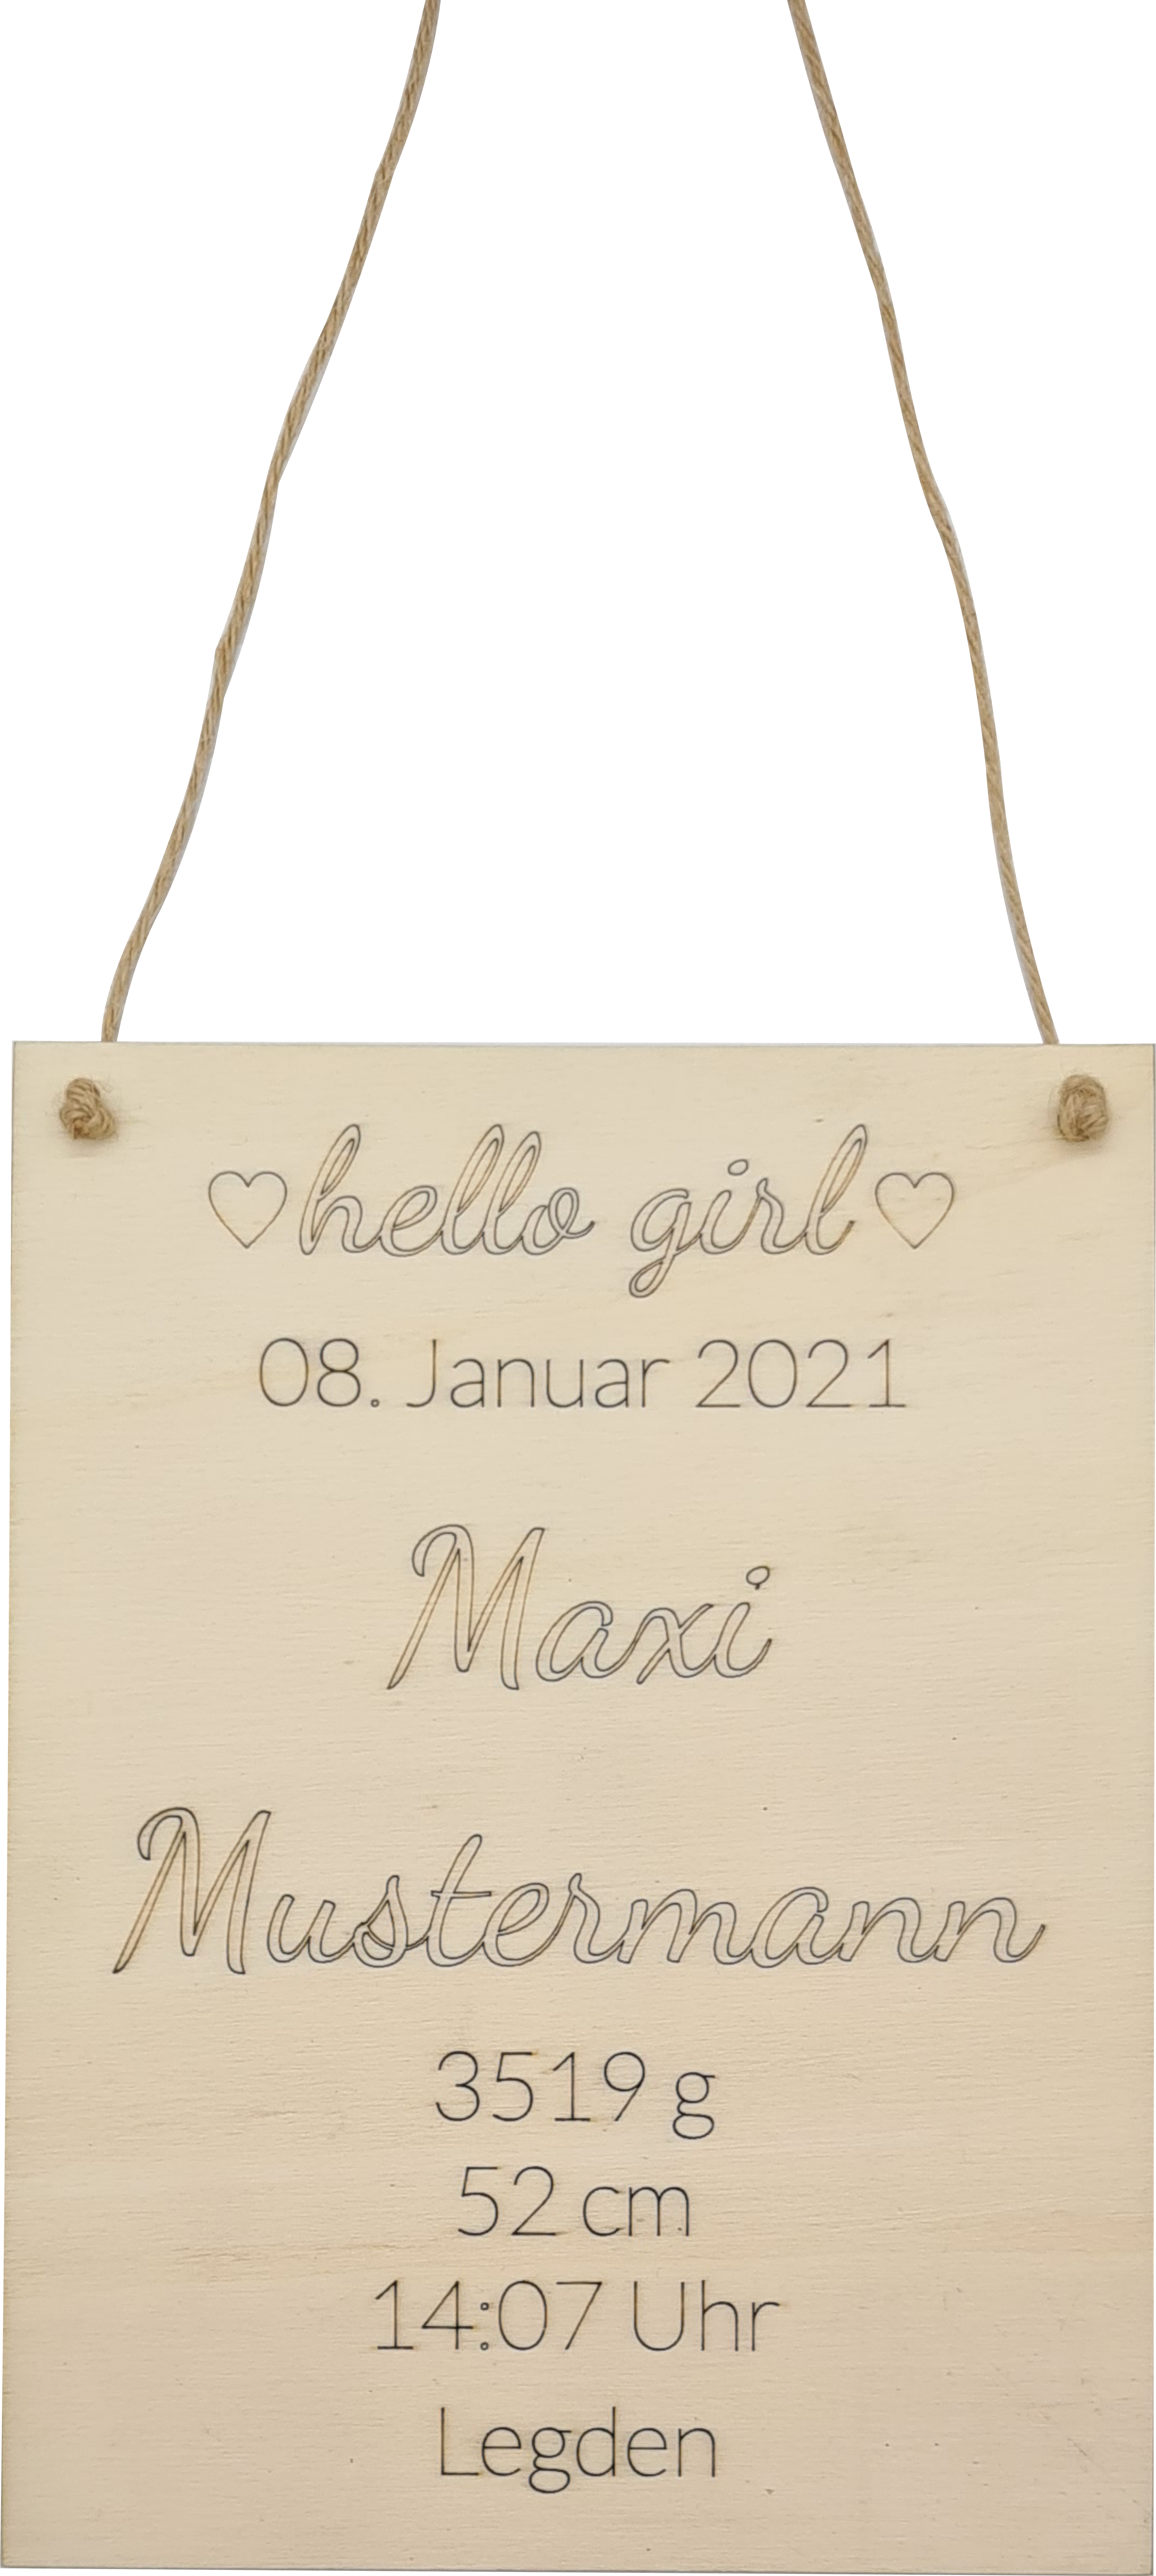 Holzschild mit Namen und Geburtsdaten - hello girl